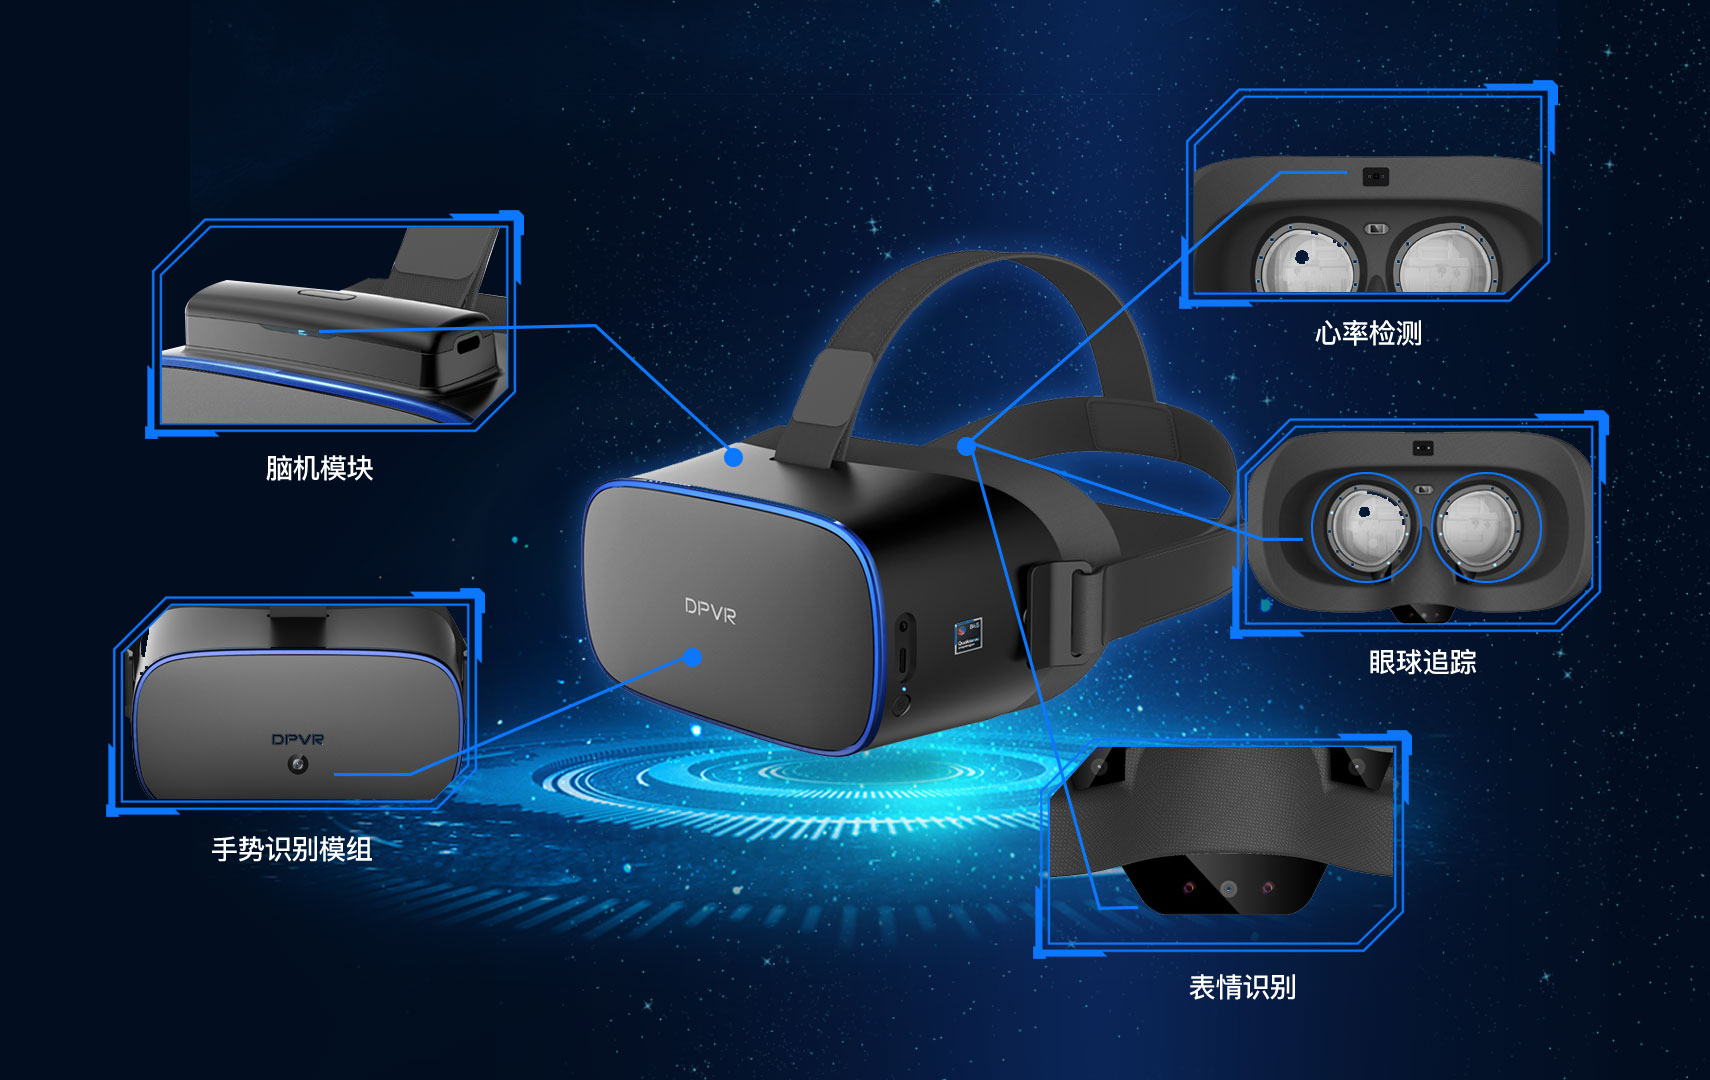 大朋VR完成新一轮千万美元融资